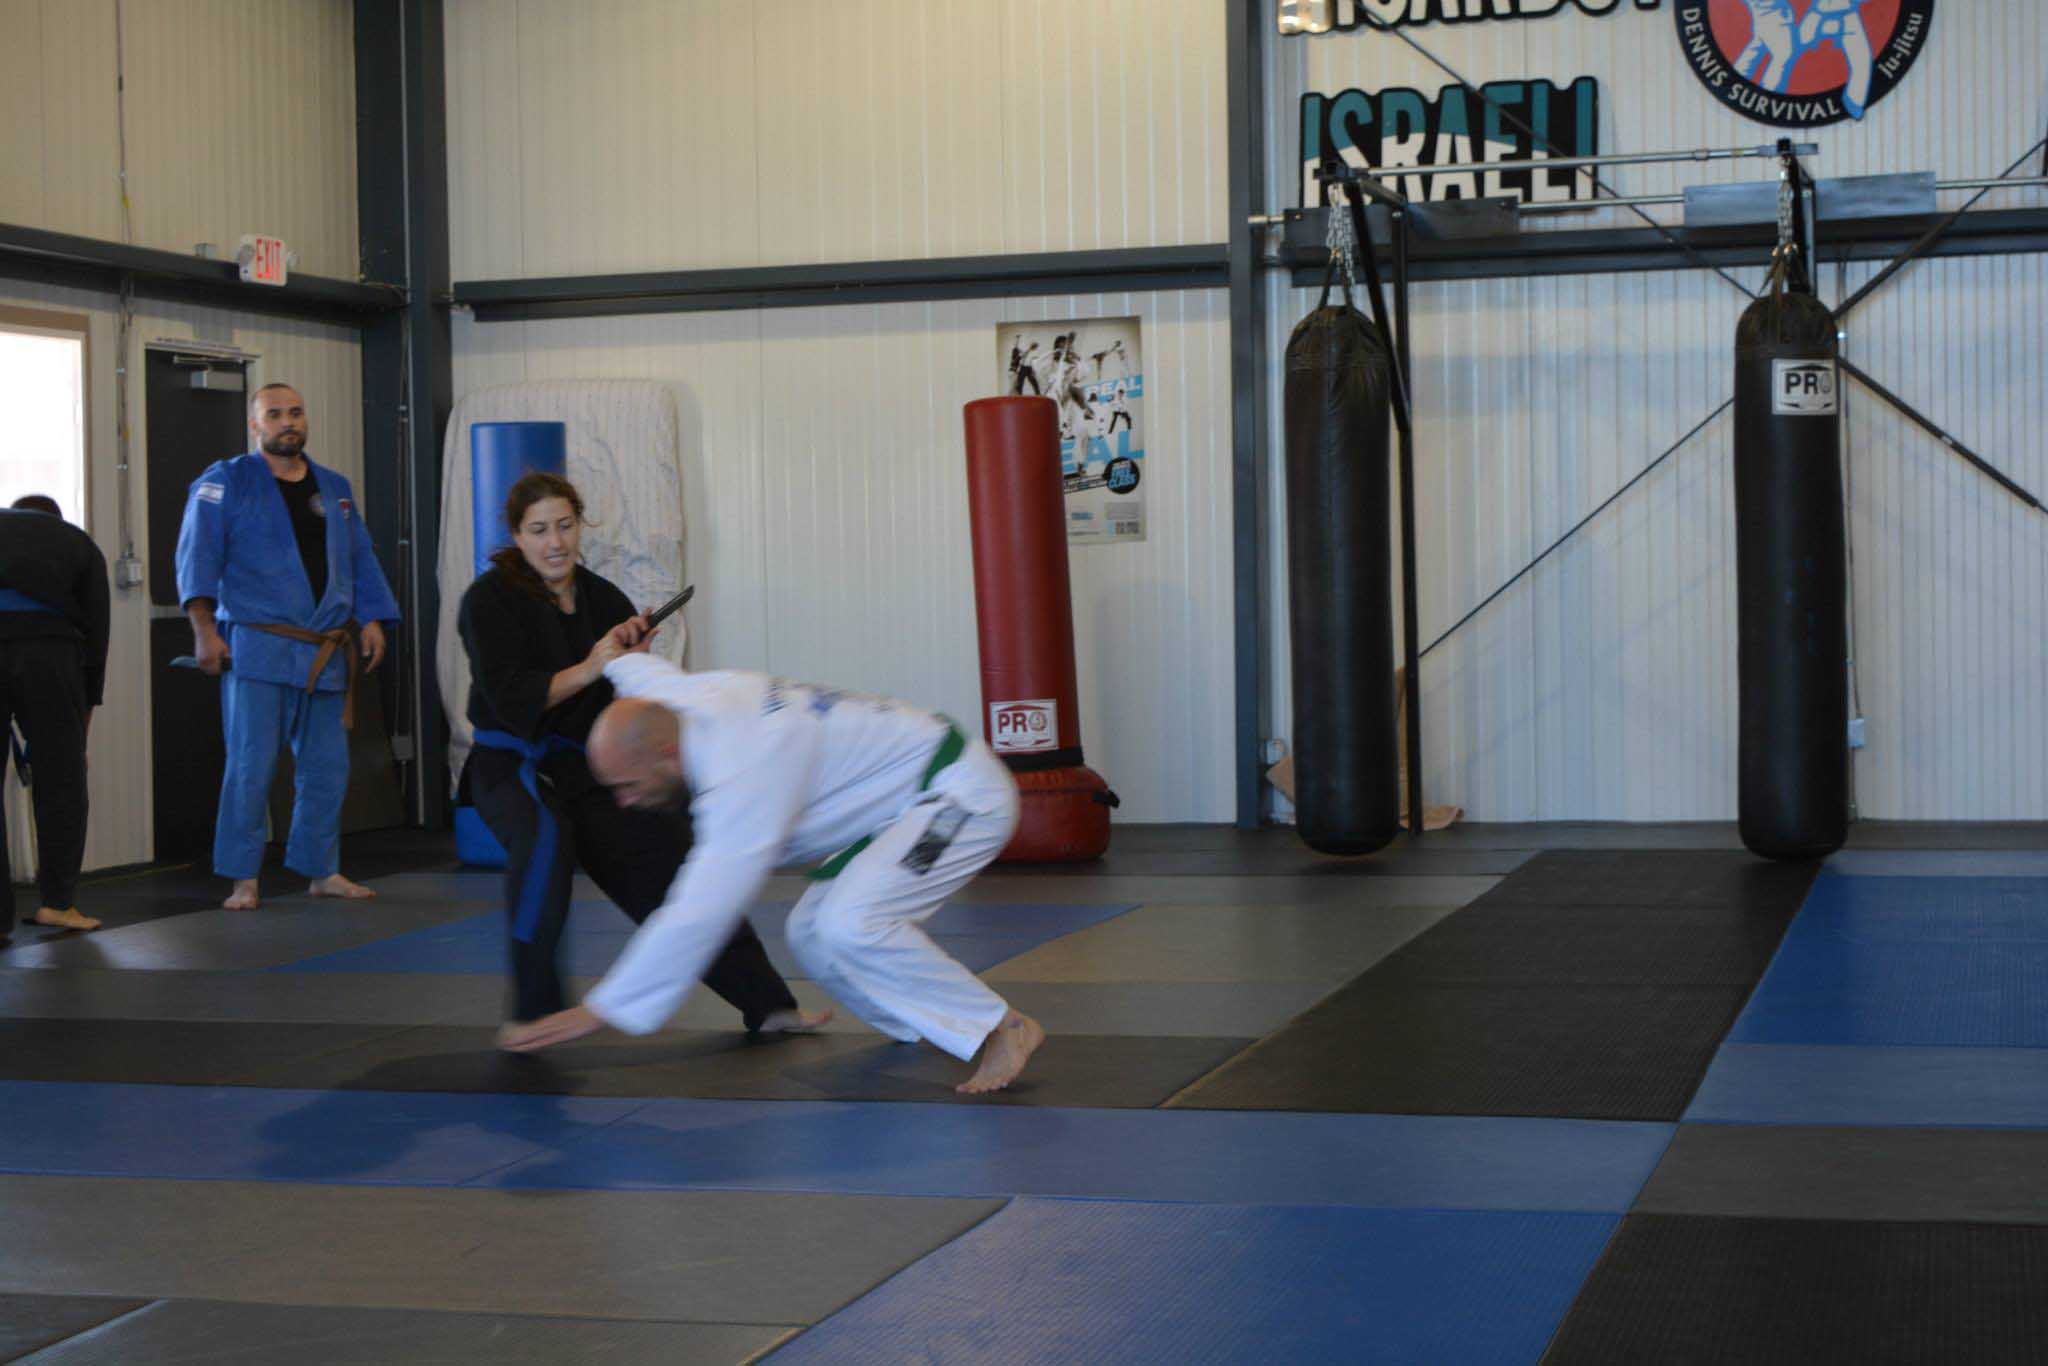 The Israeli Martial Arts Academy "Dennis Survival